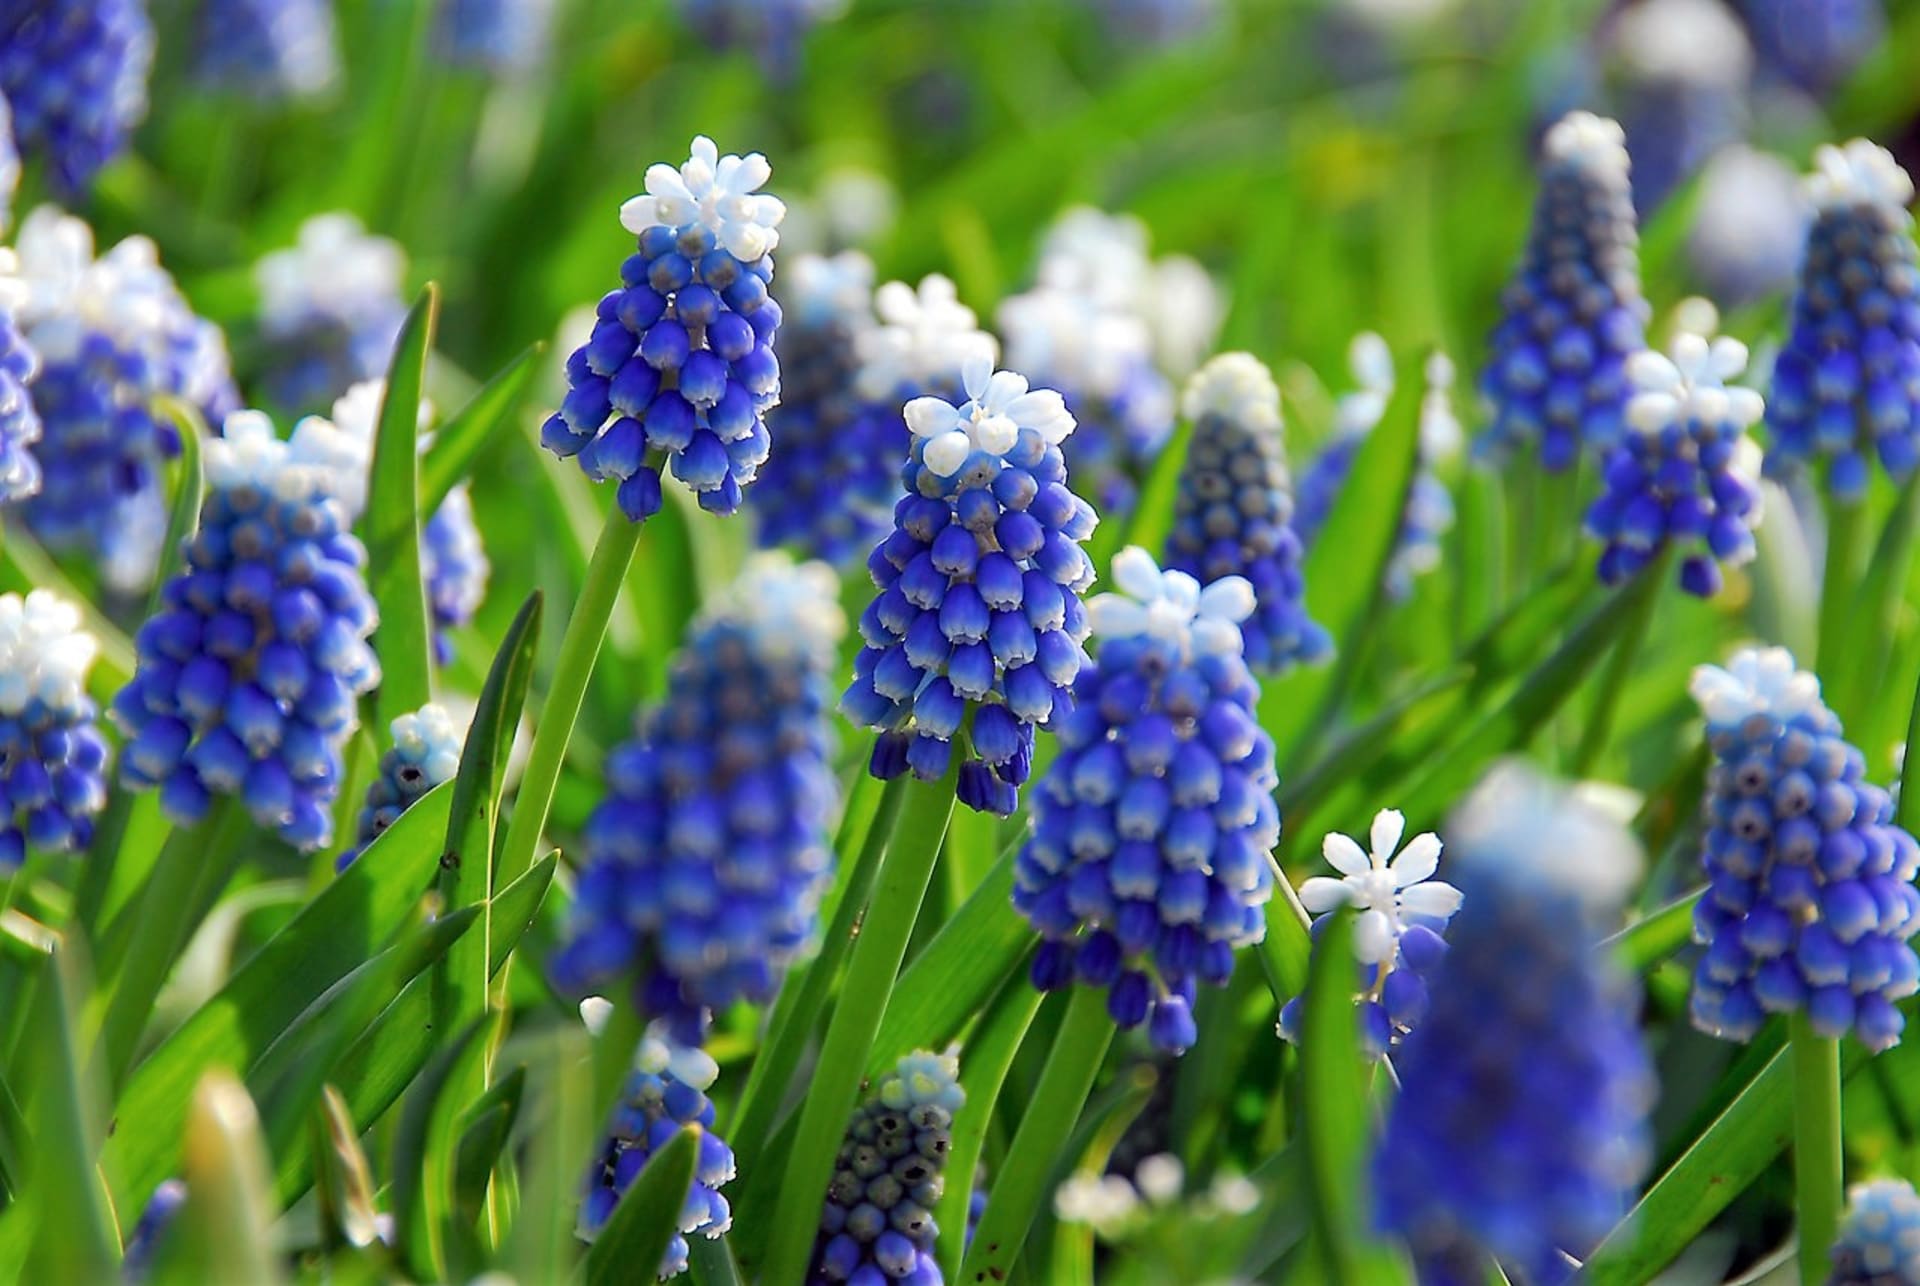 Brzy zjara rozkvétá barvou jasného nebe kultivar s názvem Mount Hood®, který zdobí modré květy s bílou čepičkou.